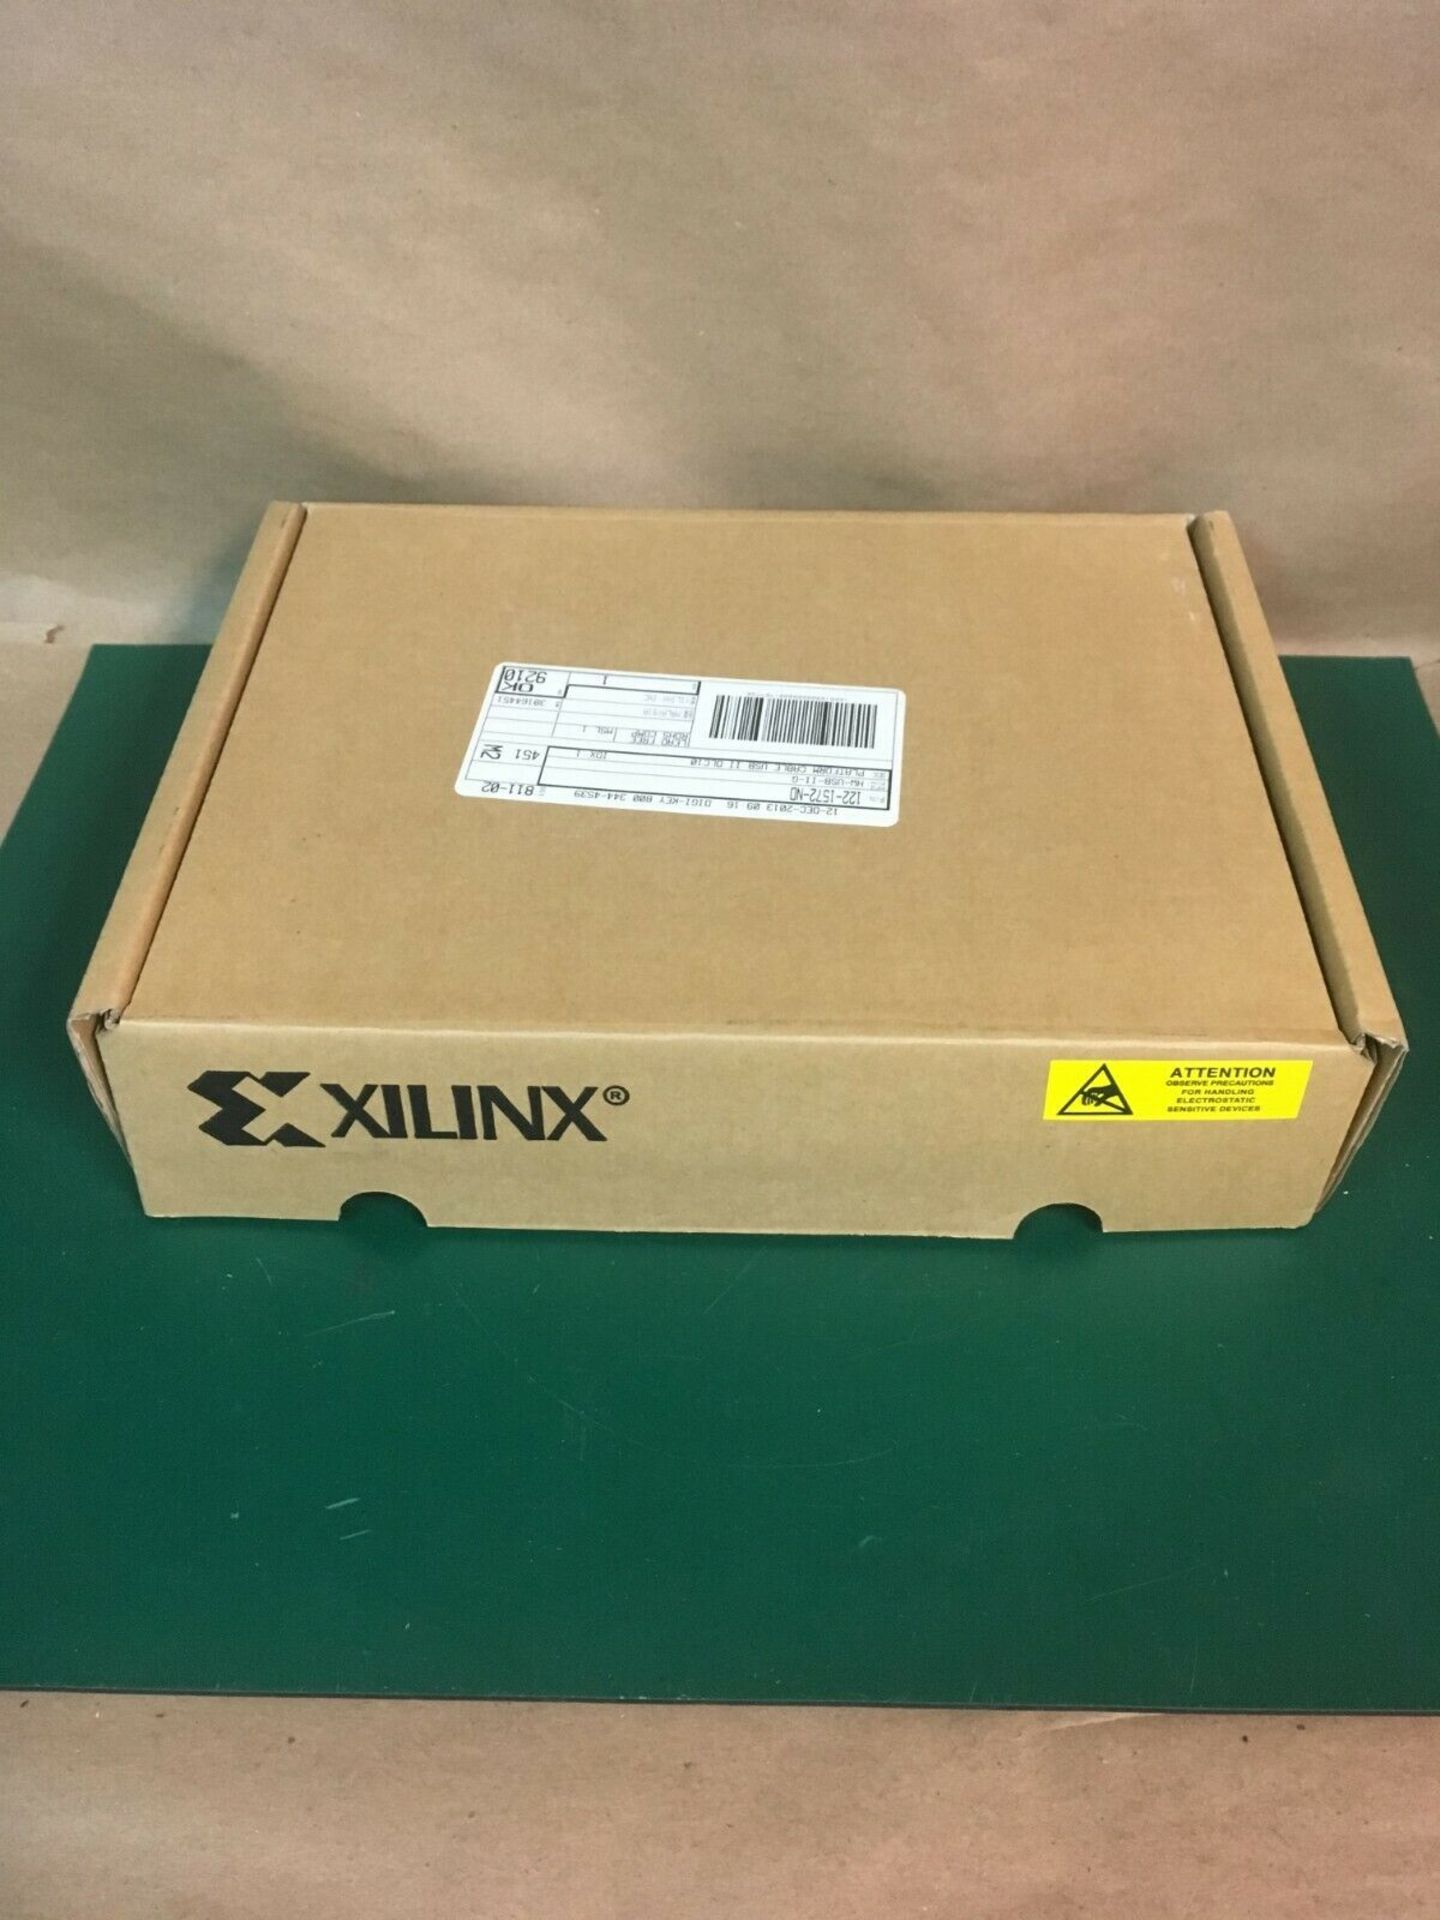 XILINX PLATFORM CABLE USB II DLC10 PROGRAMMER JTAG